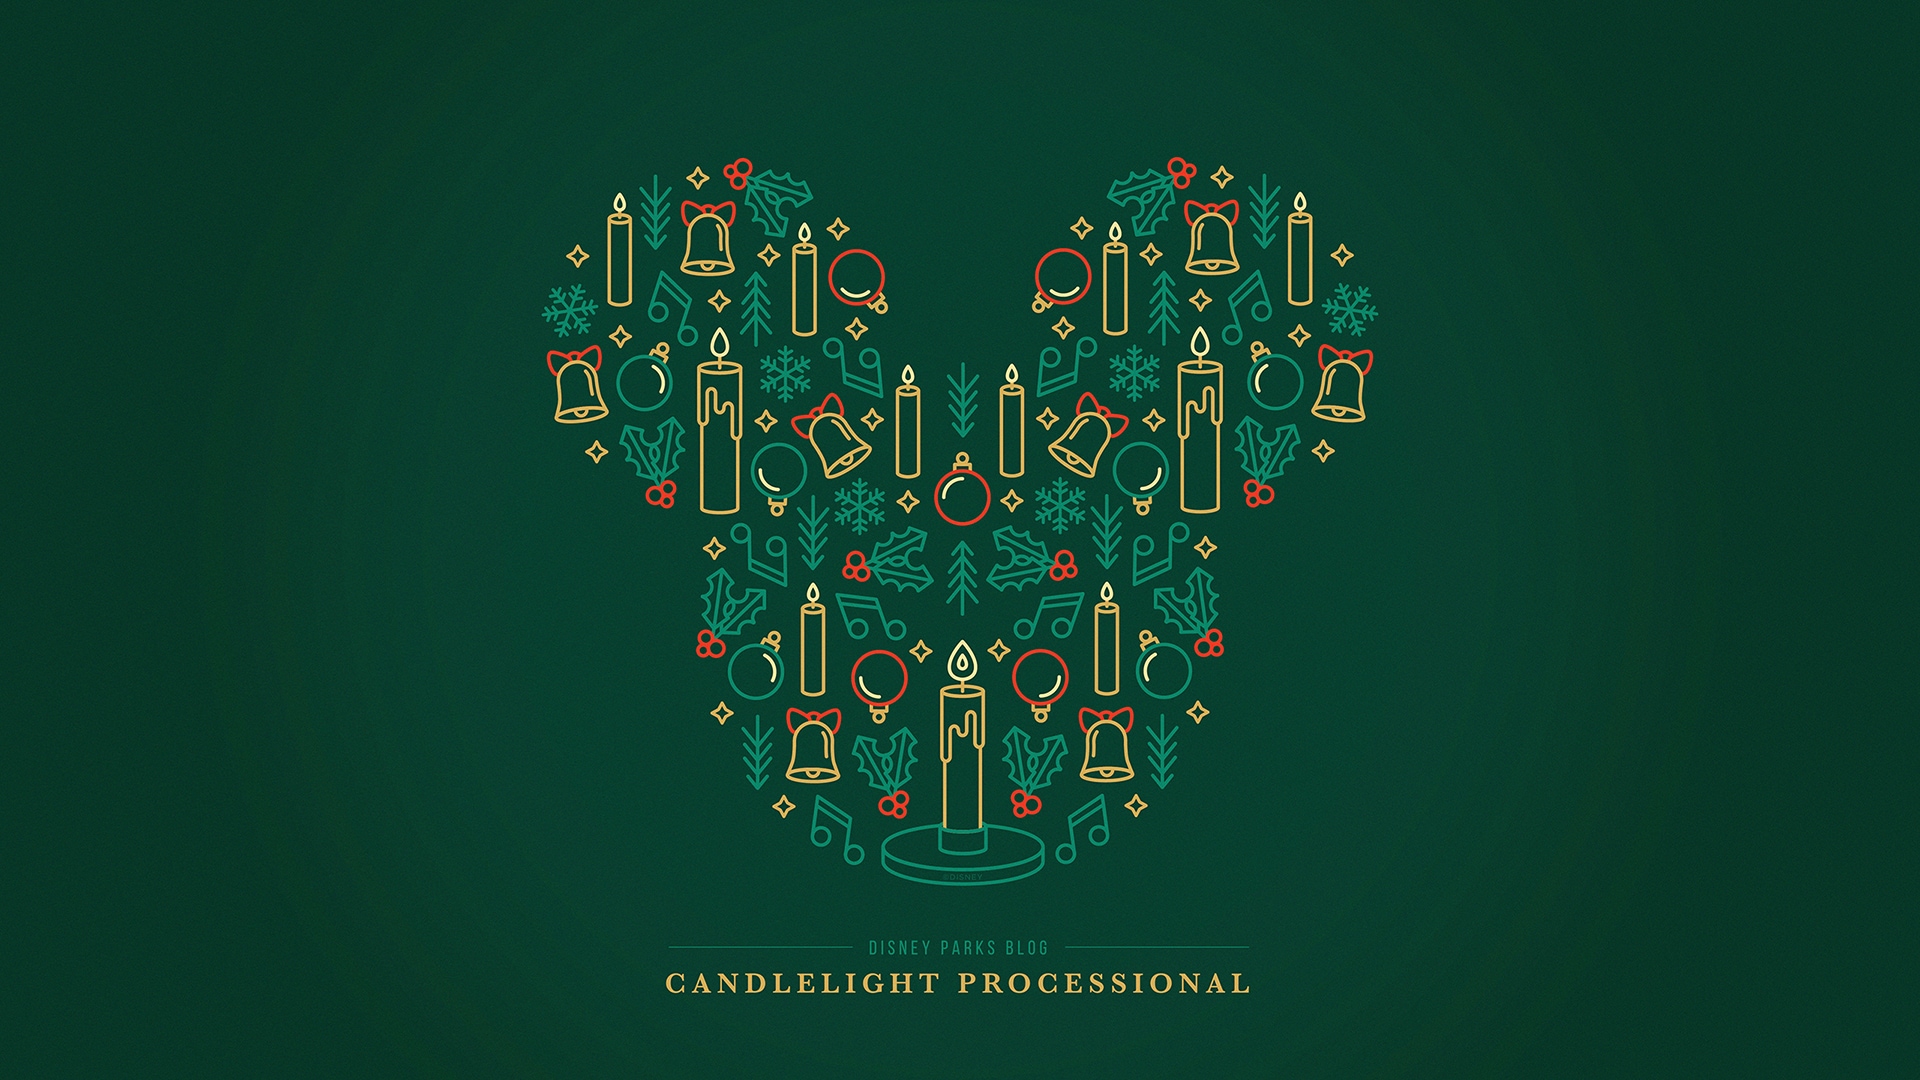 Disney Parks Blog 2018 ‘Candlelight Processional’ Wallpaper – Desktop ...